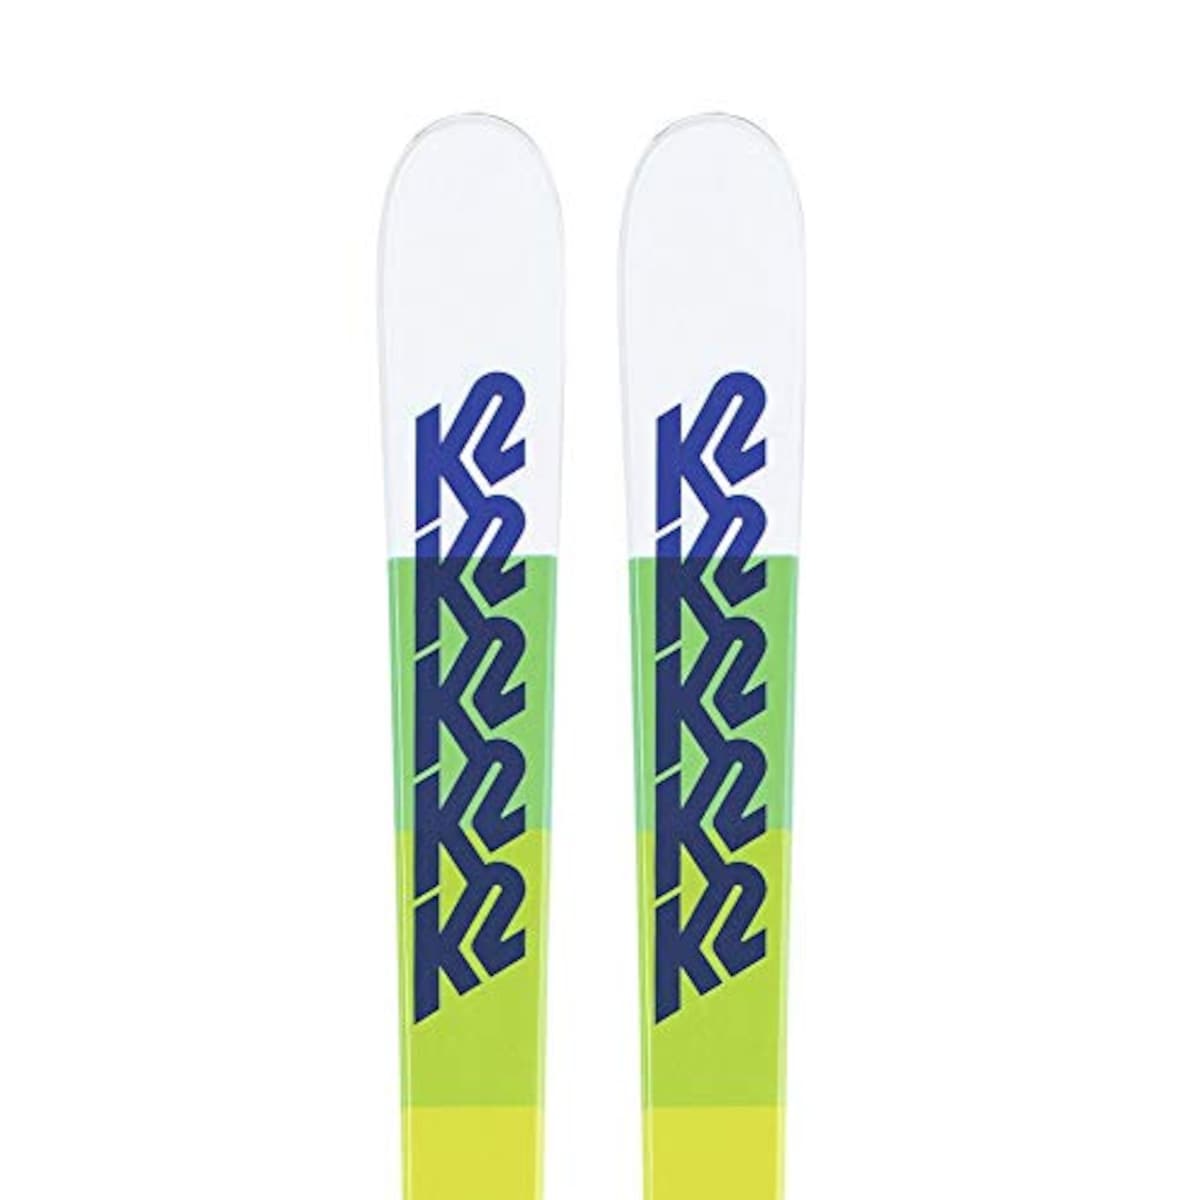 実寸サイズアトミック KONTEGA 181 スキー板 テレマーク 山スキー